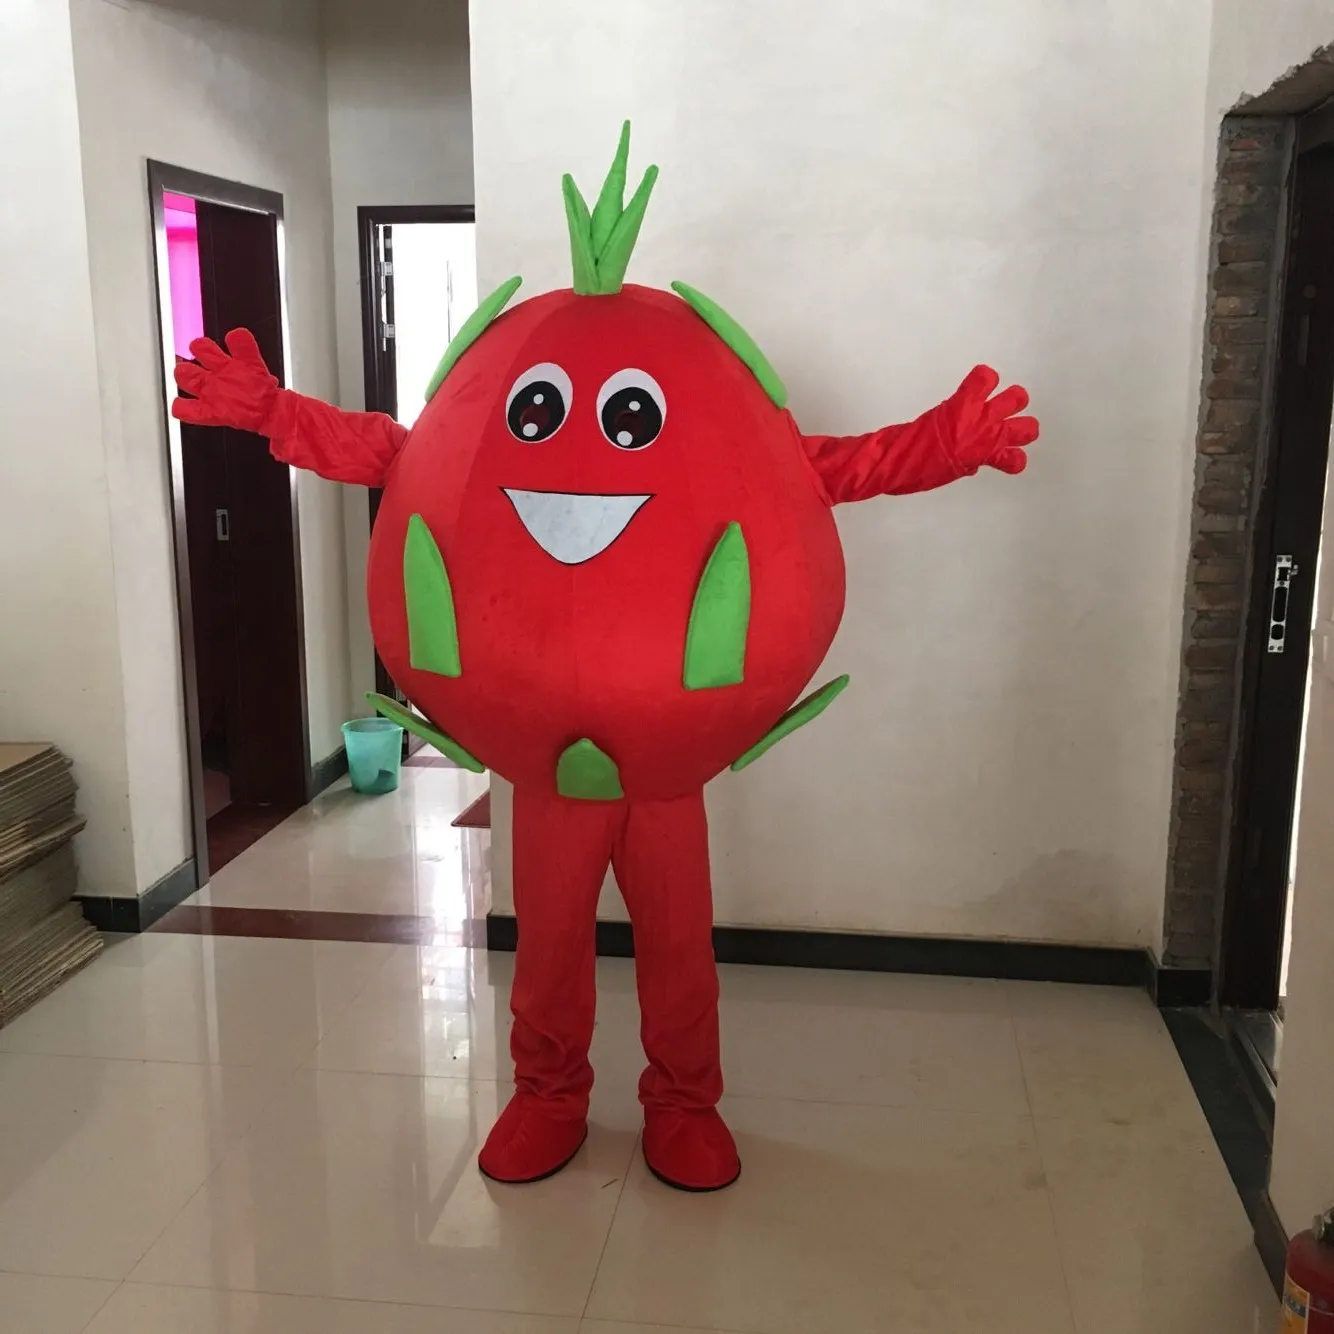 Фруктовые яблоко питайя персич ананас талисмана костюм карнавальный карикатурный костюм персонаж костюм рекламного костюма